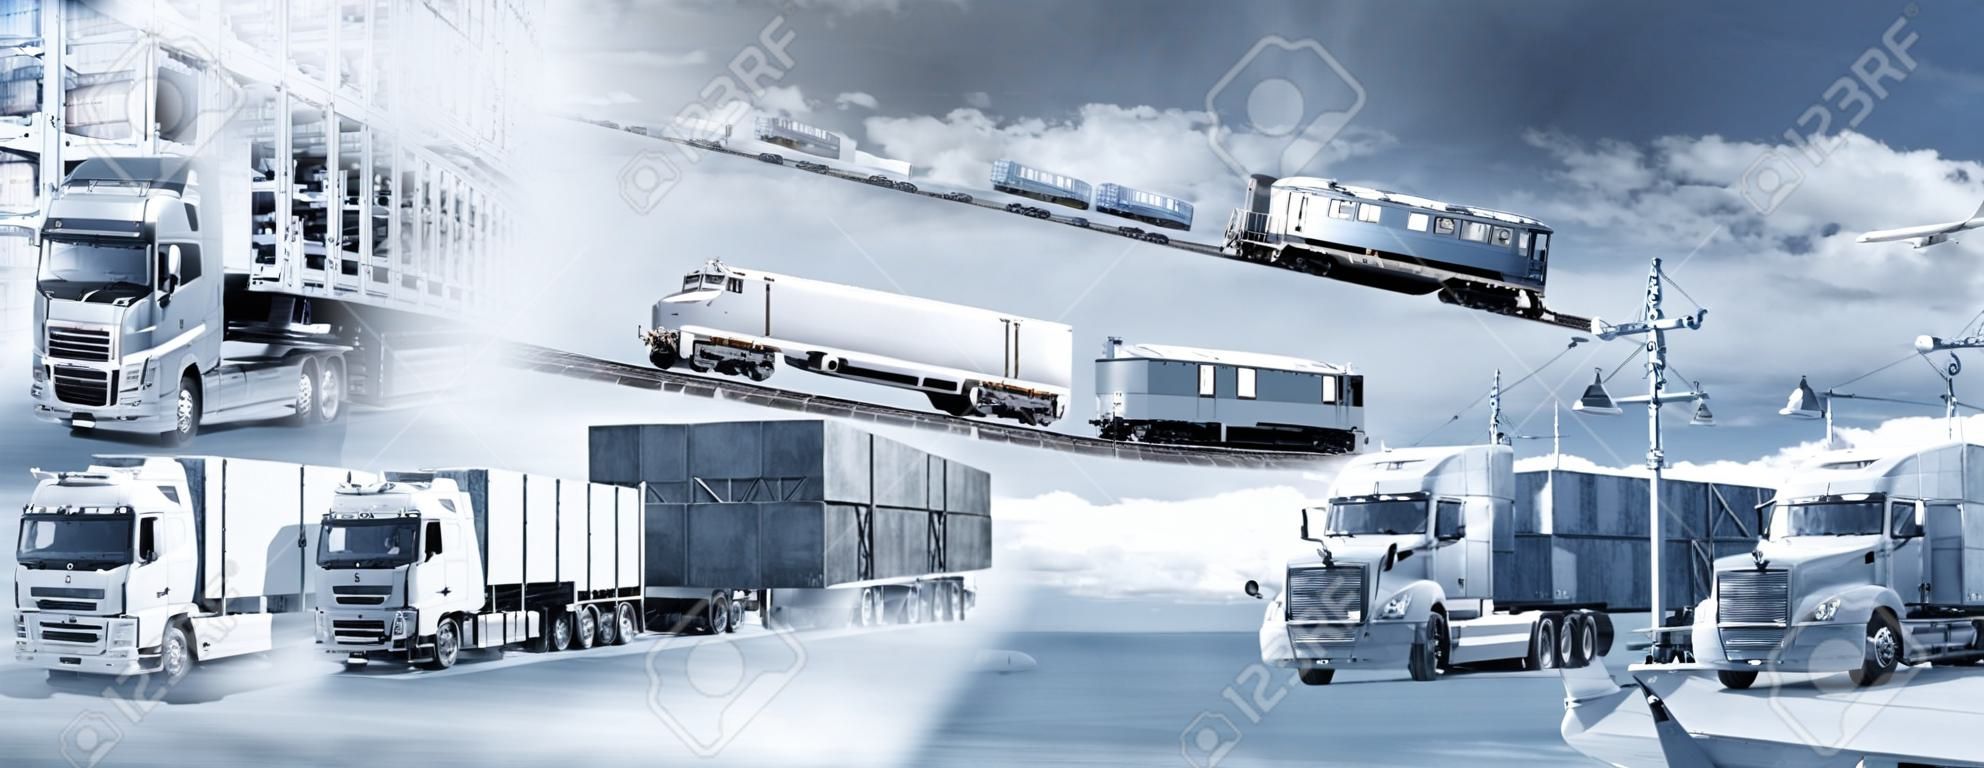 Transporte de mercadorias por caminhão, navio, avião e trem e seu armazenamento.